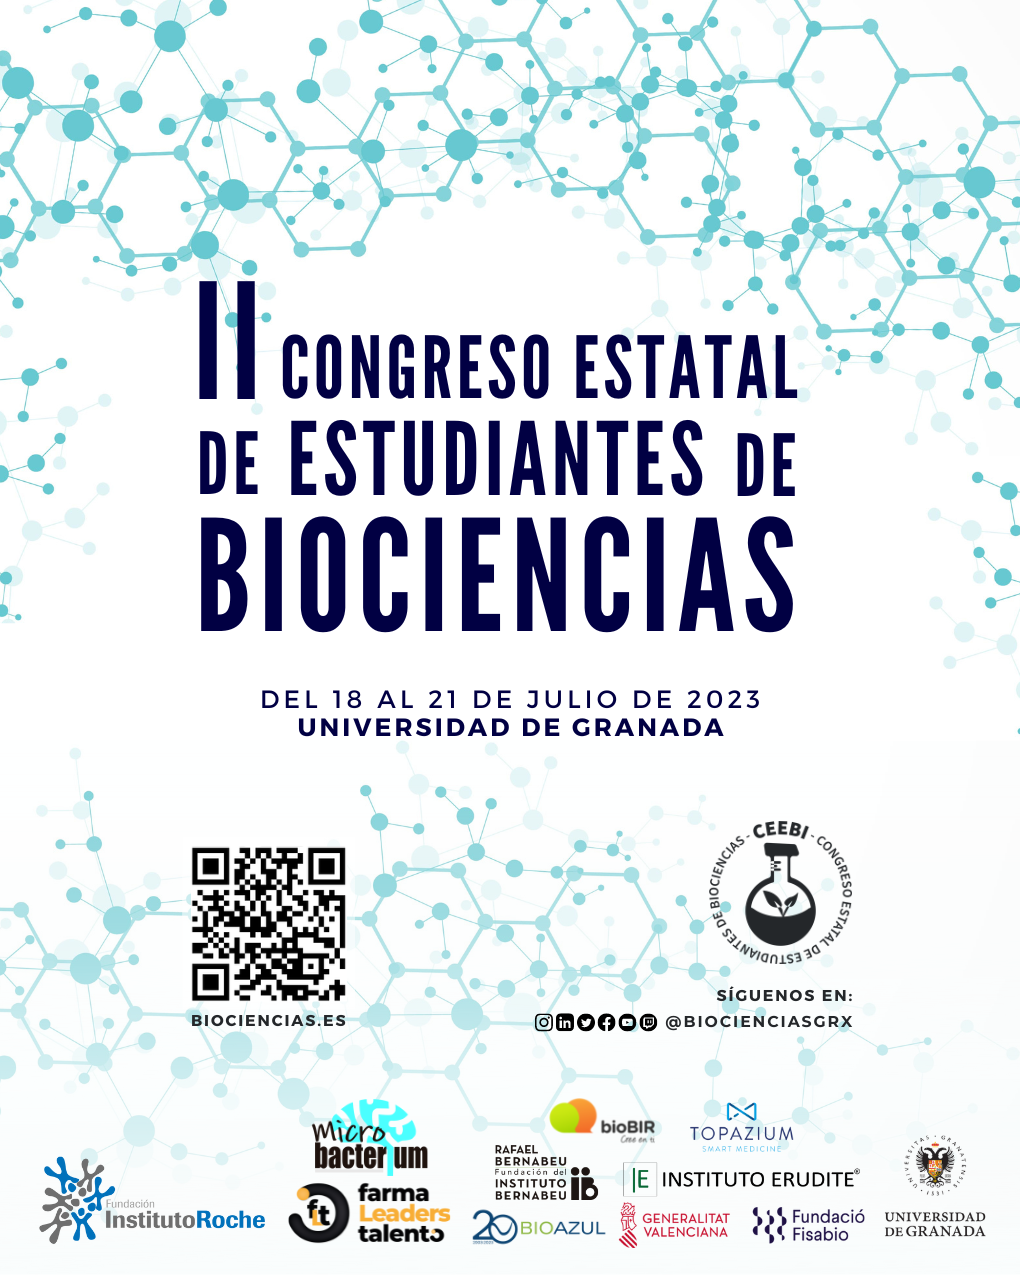 II Congreso Estatal de Estudiantes de Biociencias. 18  al 21 cd julio cd 2023. Universidad de Granada.